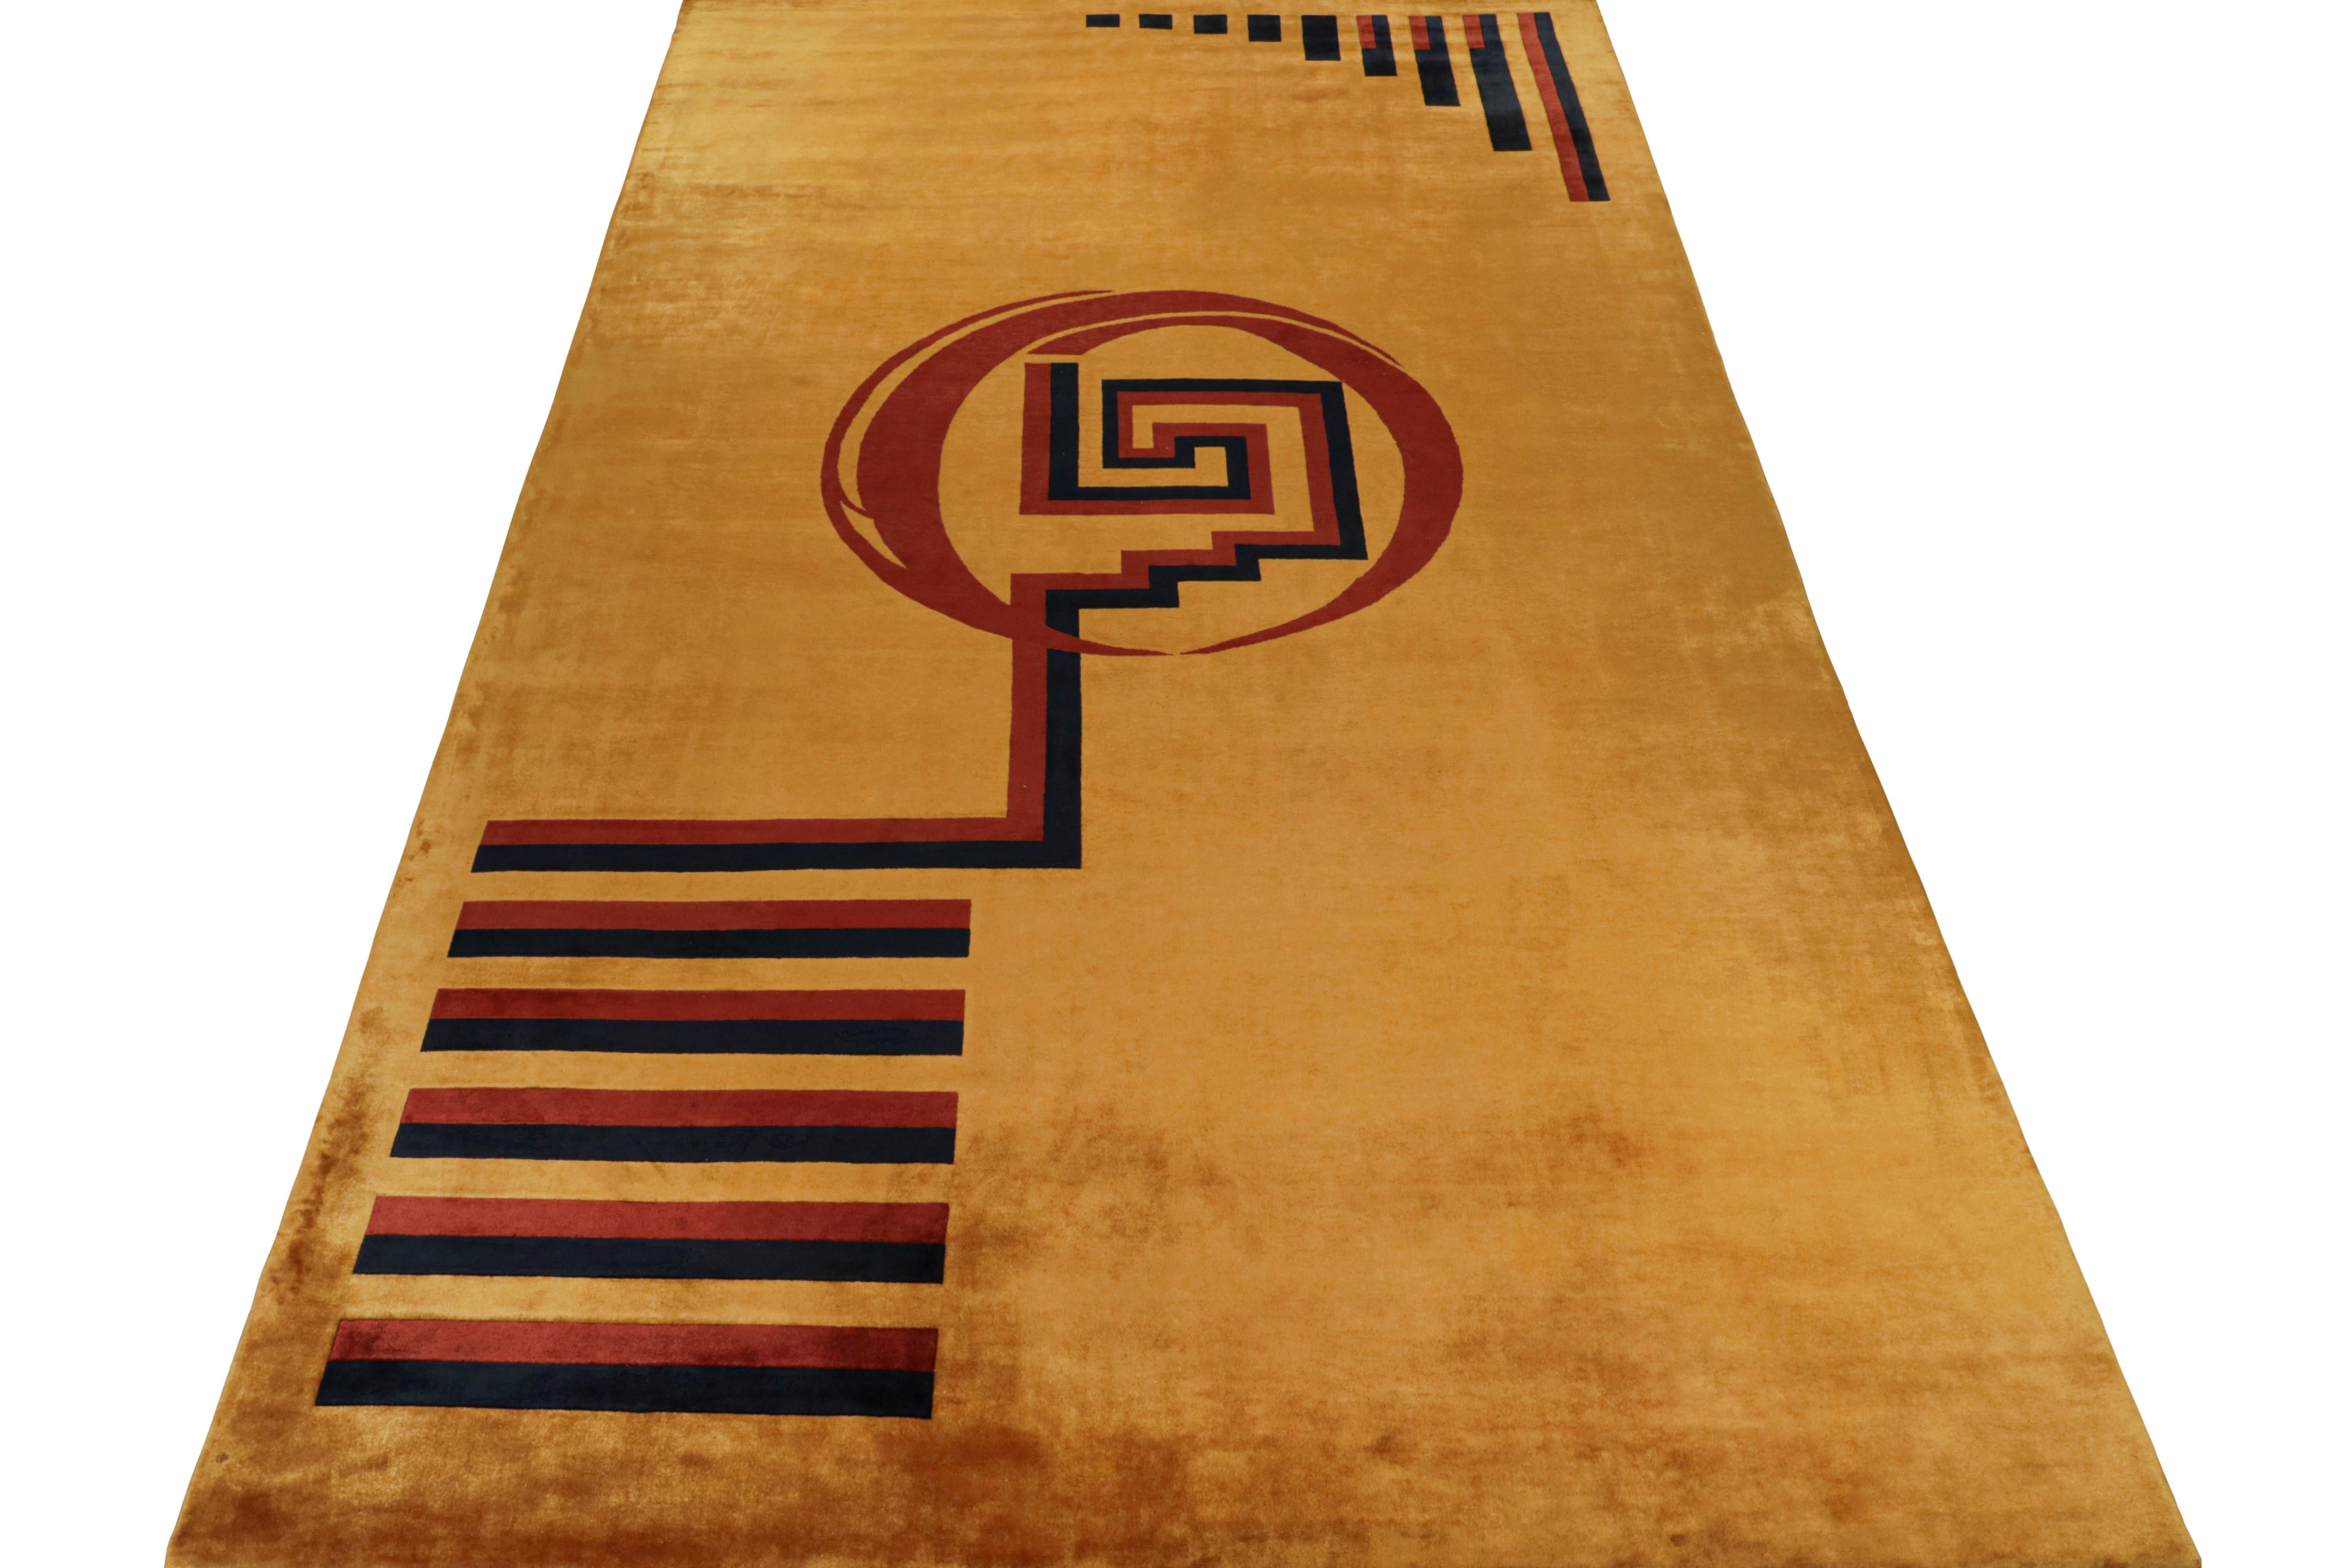 Dieser antike Art-Déco-Teppich im Format 10x18 ist die nächste großartige Ergänzung im Repertoire der klassischen Kurationen von Rug & Kilim. Handgeknüpft aus Wolle.
Weiter zum Design: 
Dieses Stück ist im minimalistischen französischen Deco-Stil